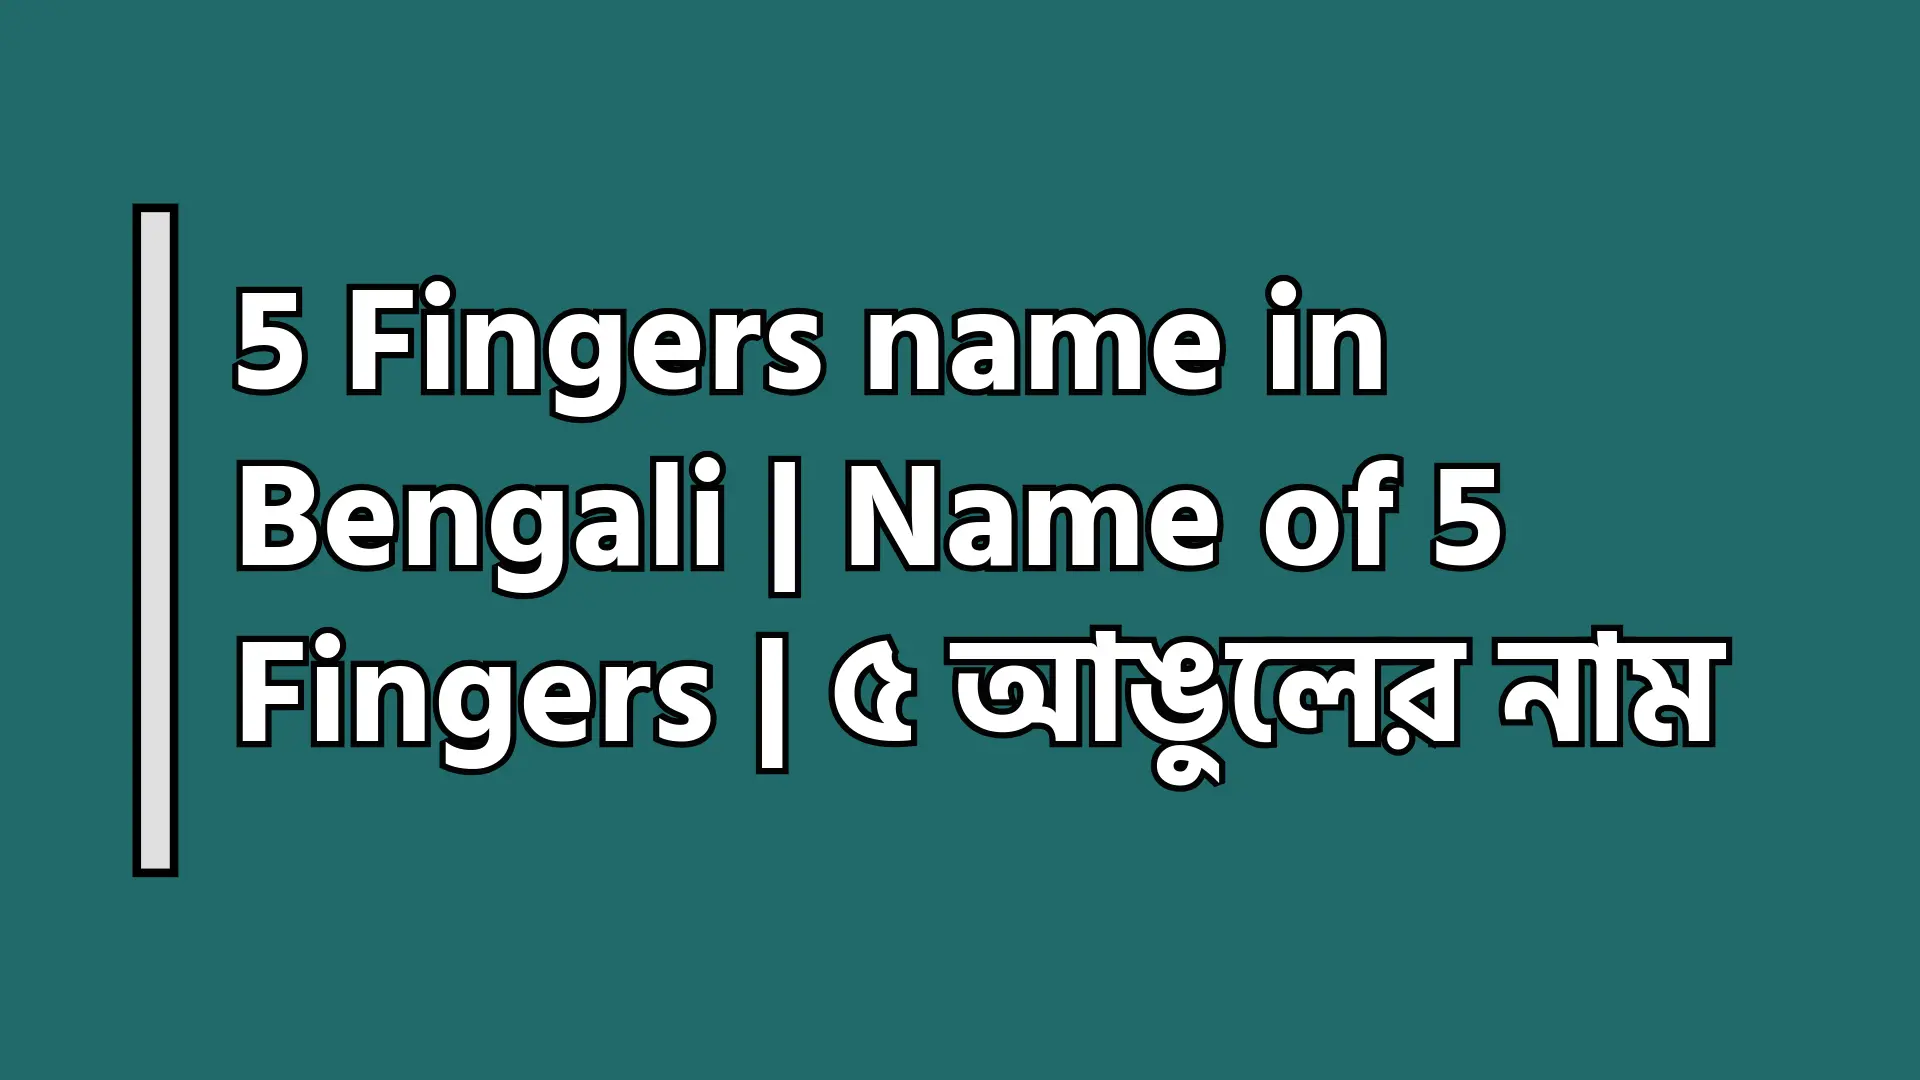 5 Fingers name in Bengali - Name of 5 Fingers - ৫ আঙুলের নাম